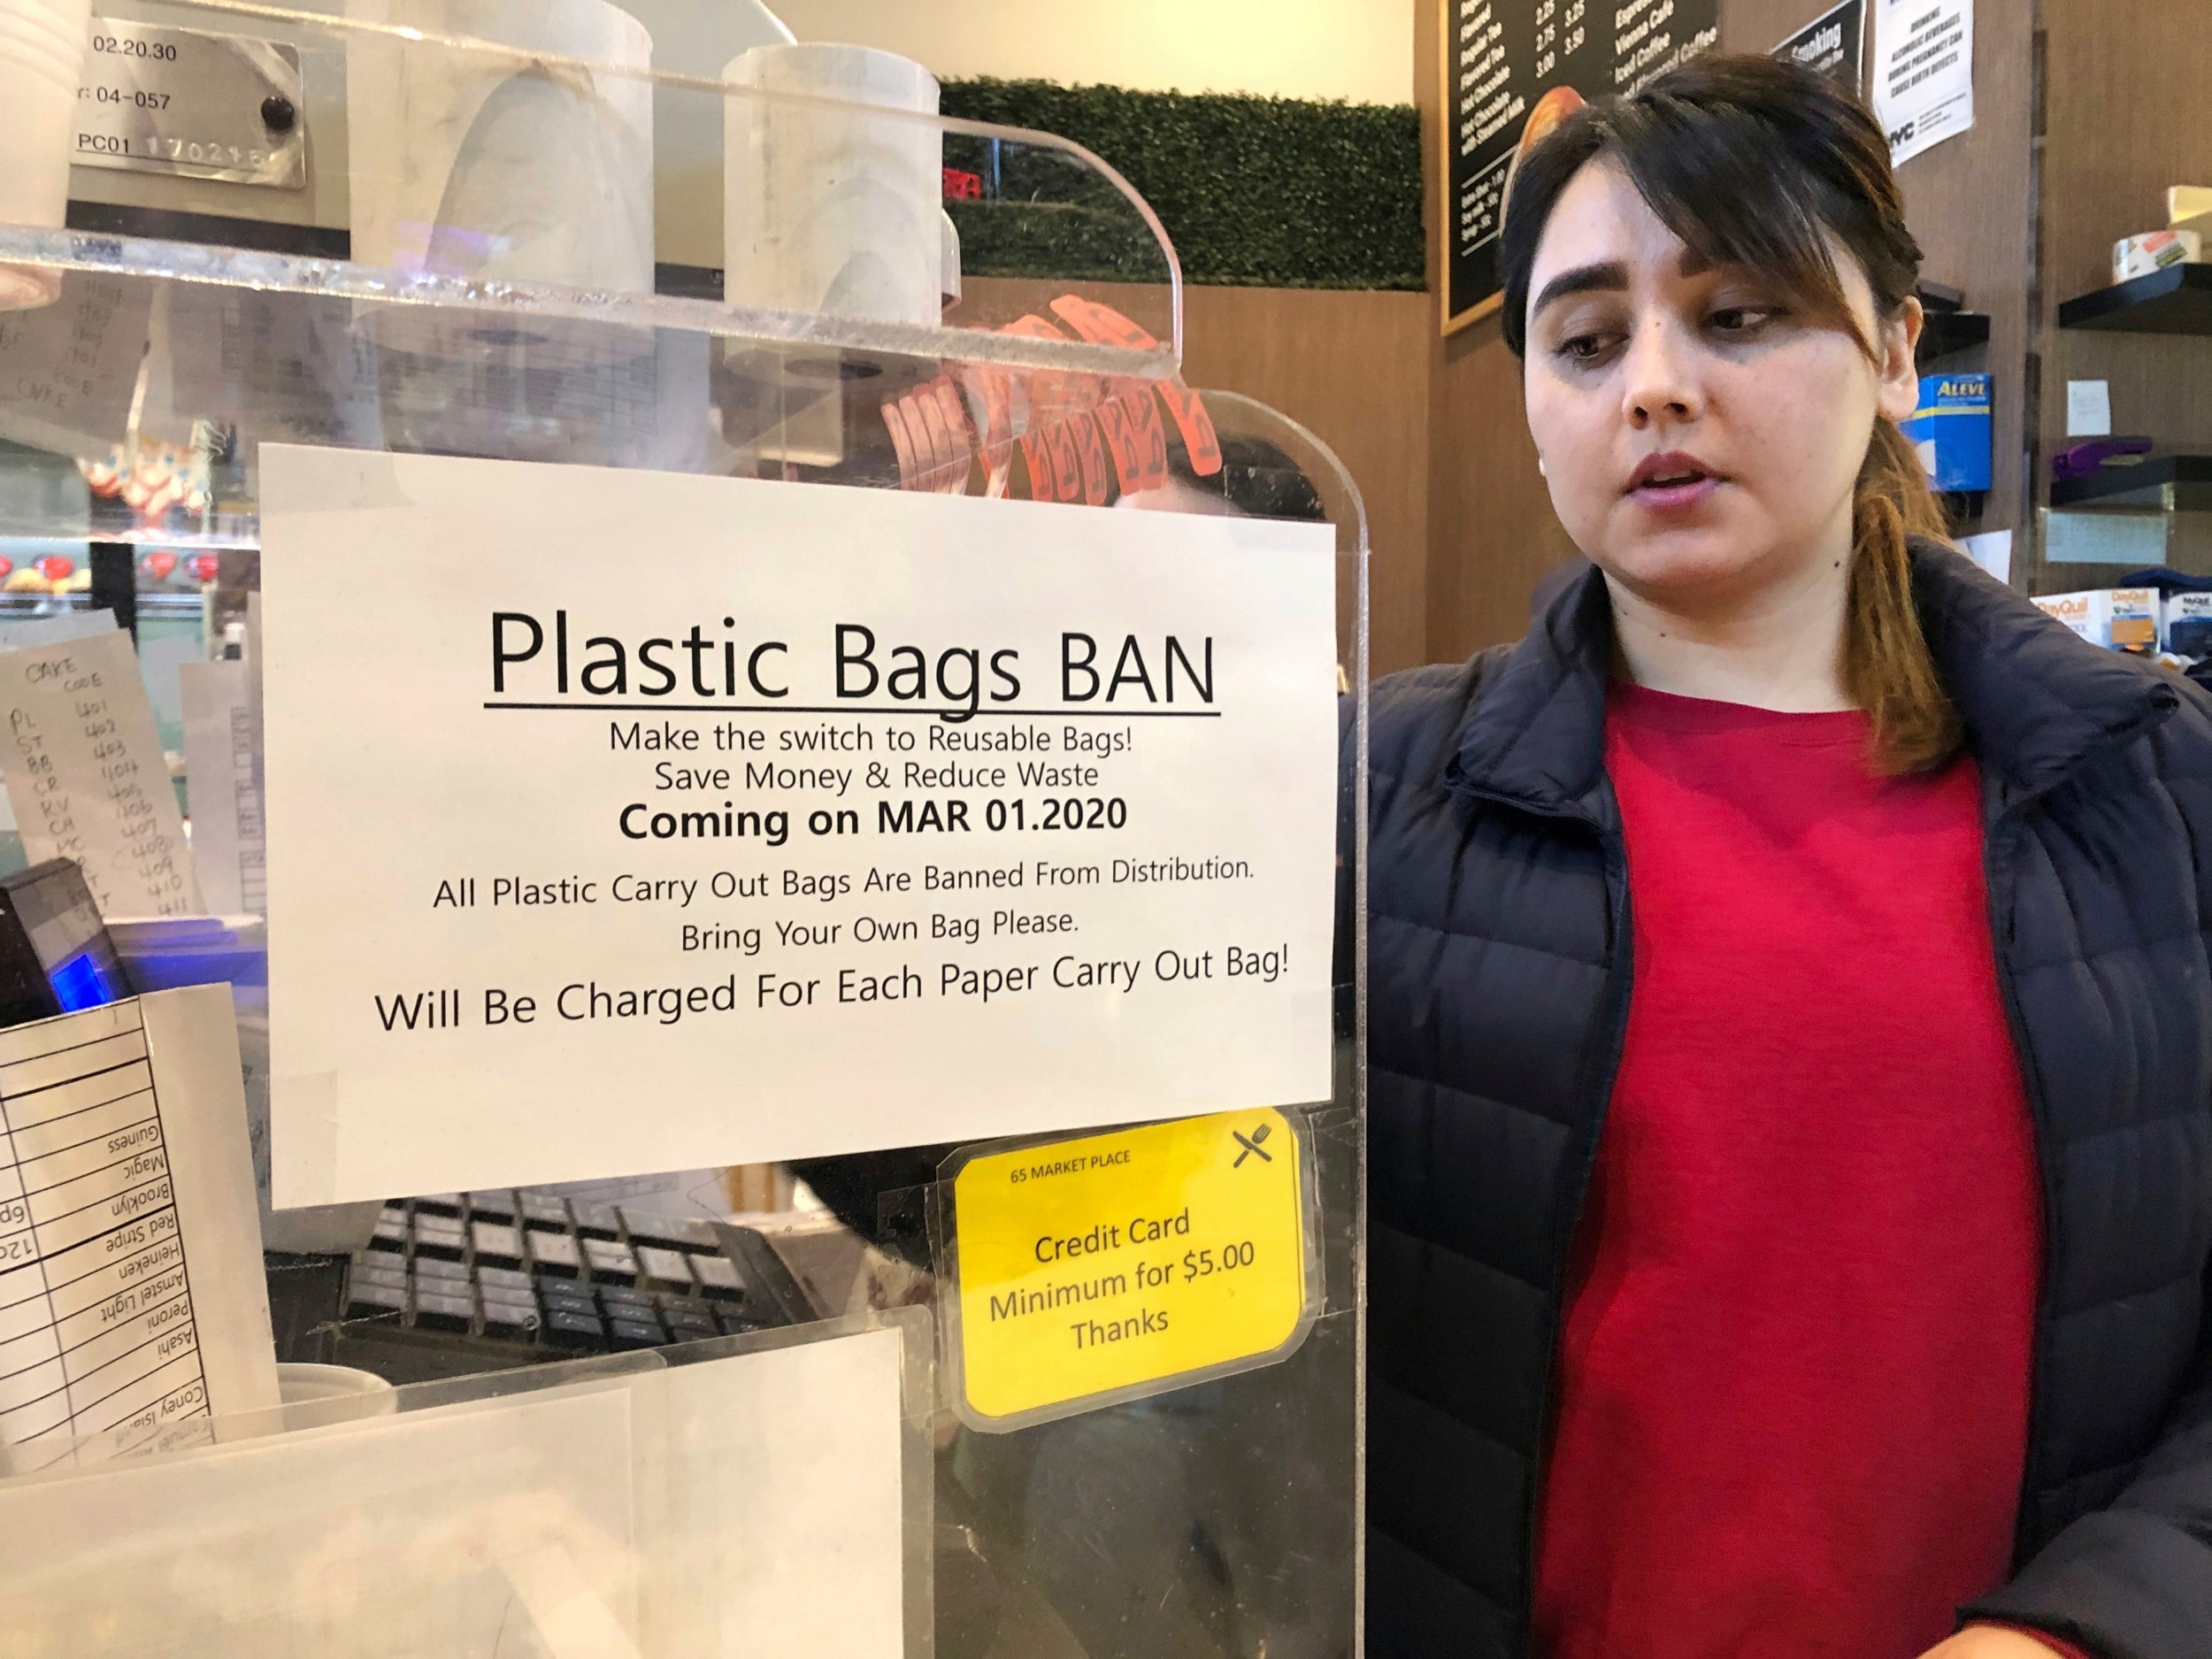 NYC plastic bag ban: Reusable bags to buy now